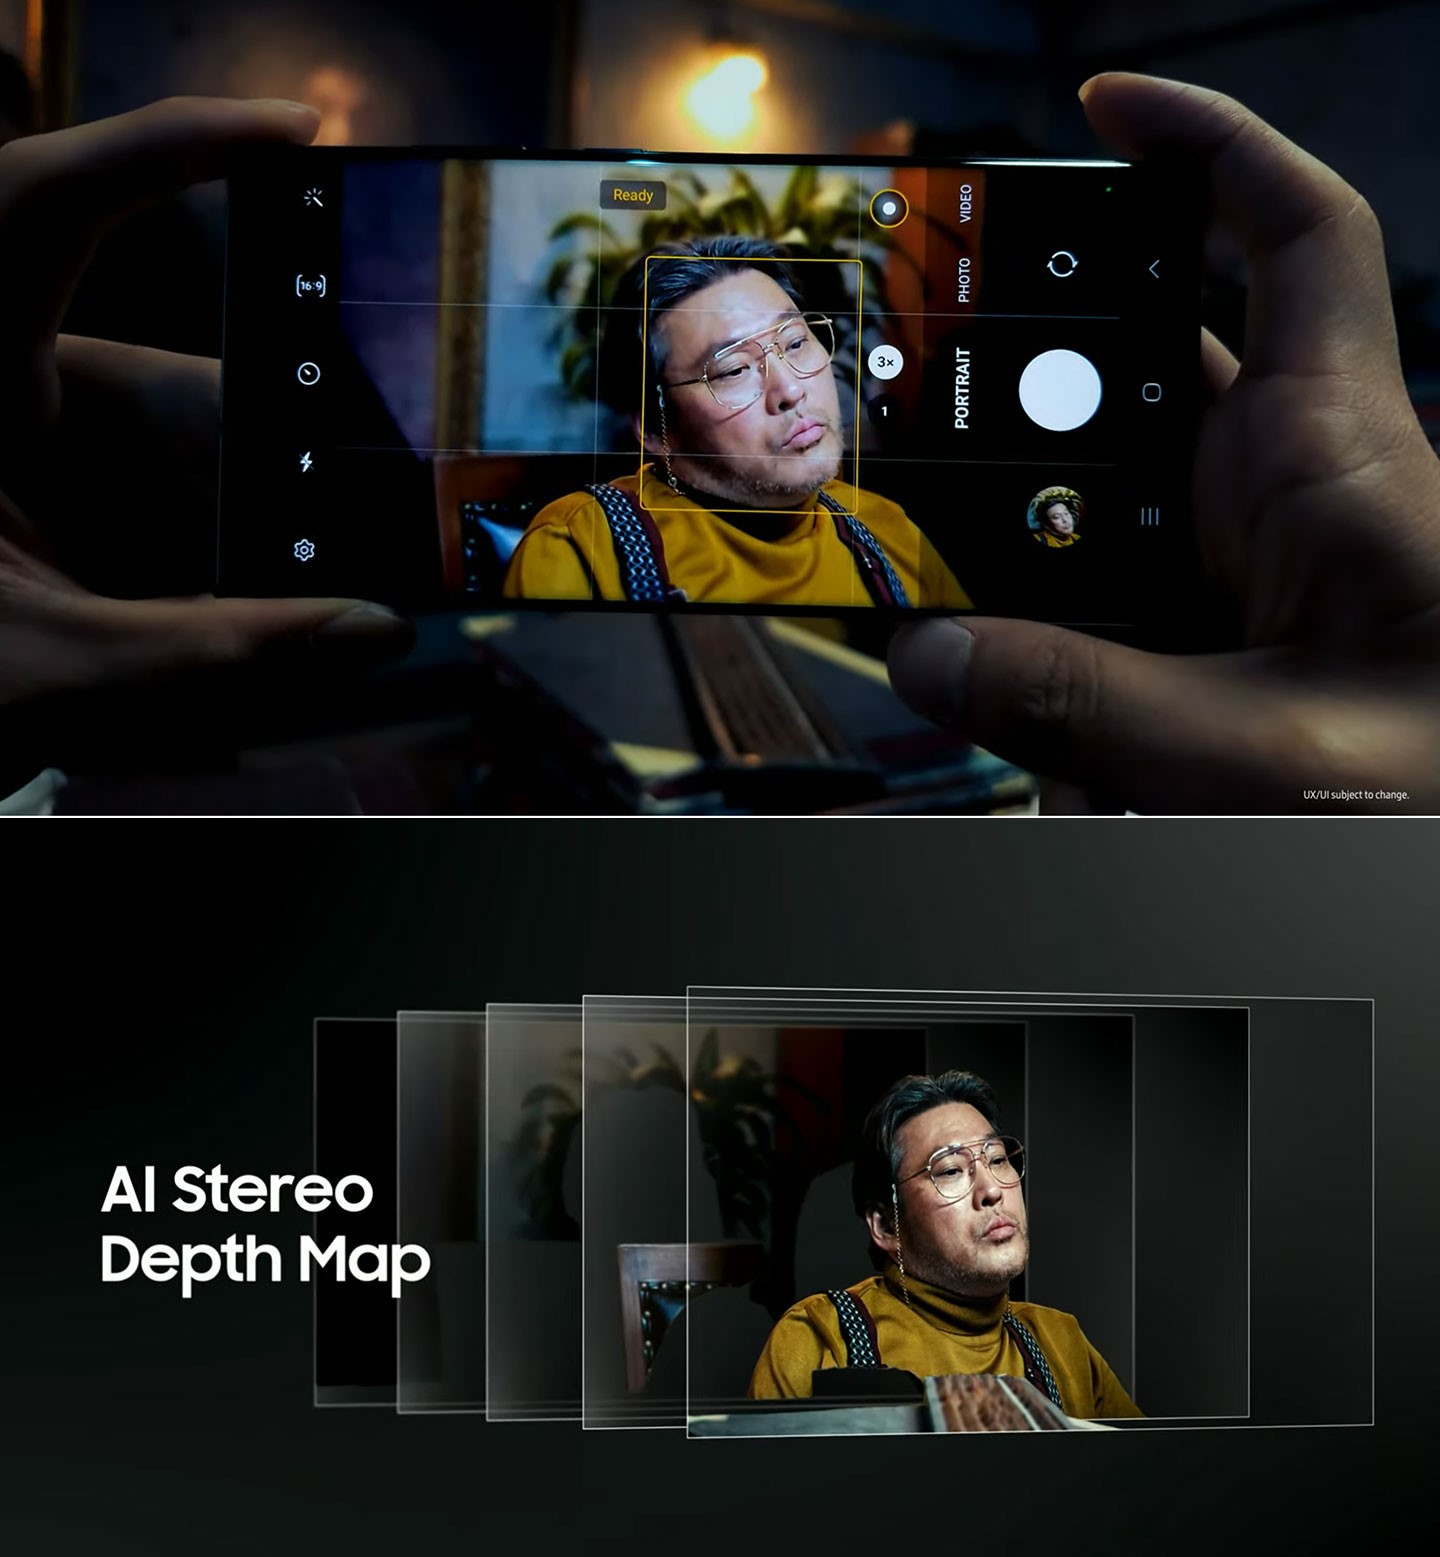 透過 AI 輔助，Galaxy S23 系列在拍攝人像照時能夠準確分析畫面的主體與背景，讓主角更清晰，背景柔焦也更自然。